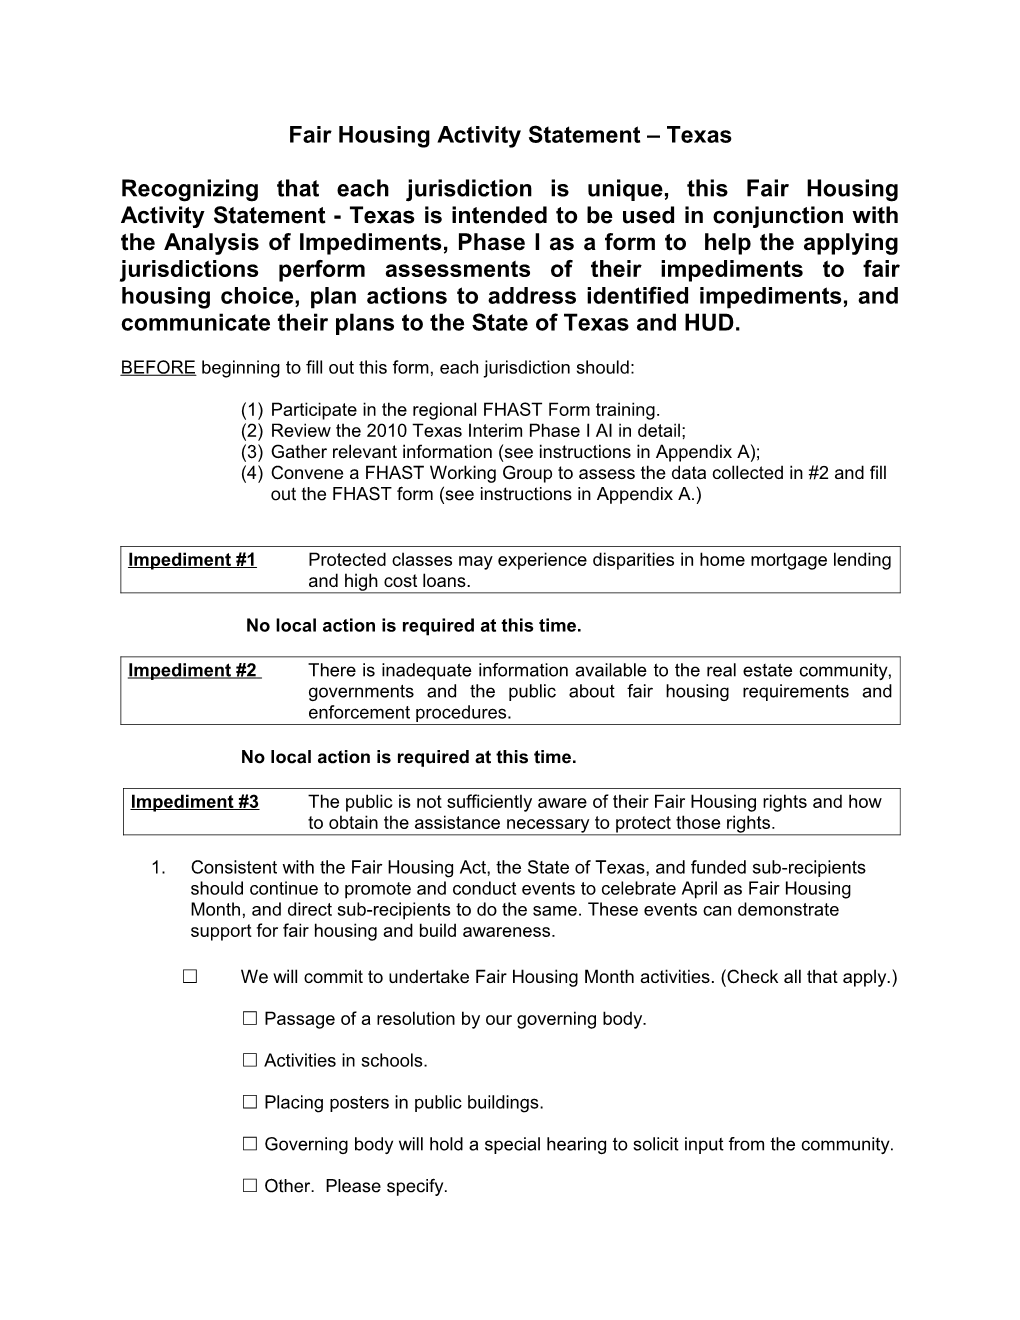 Fair Housing Activity Statement (FHAST) Form